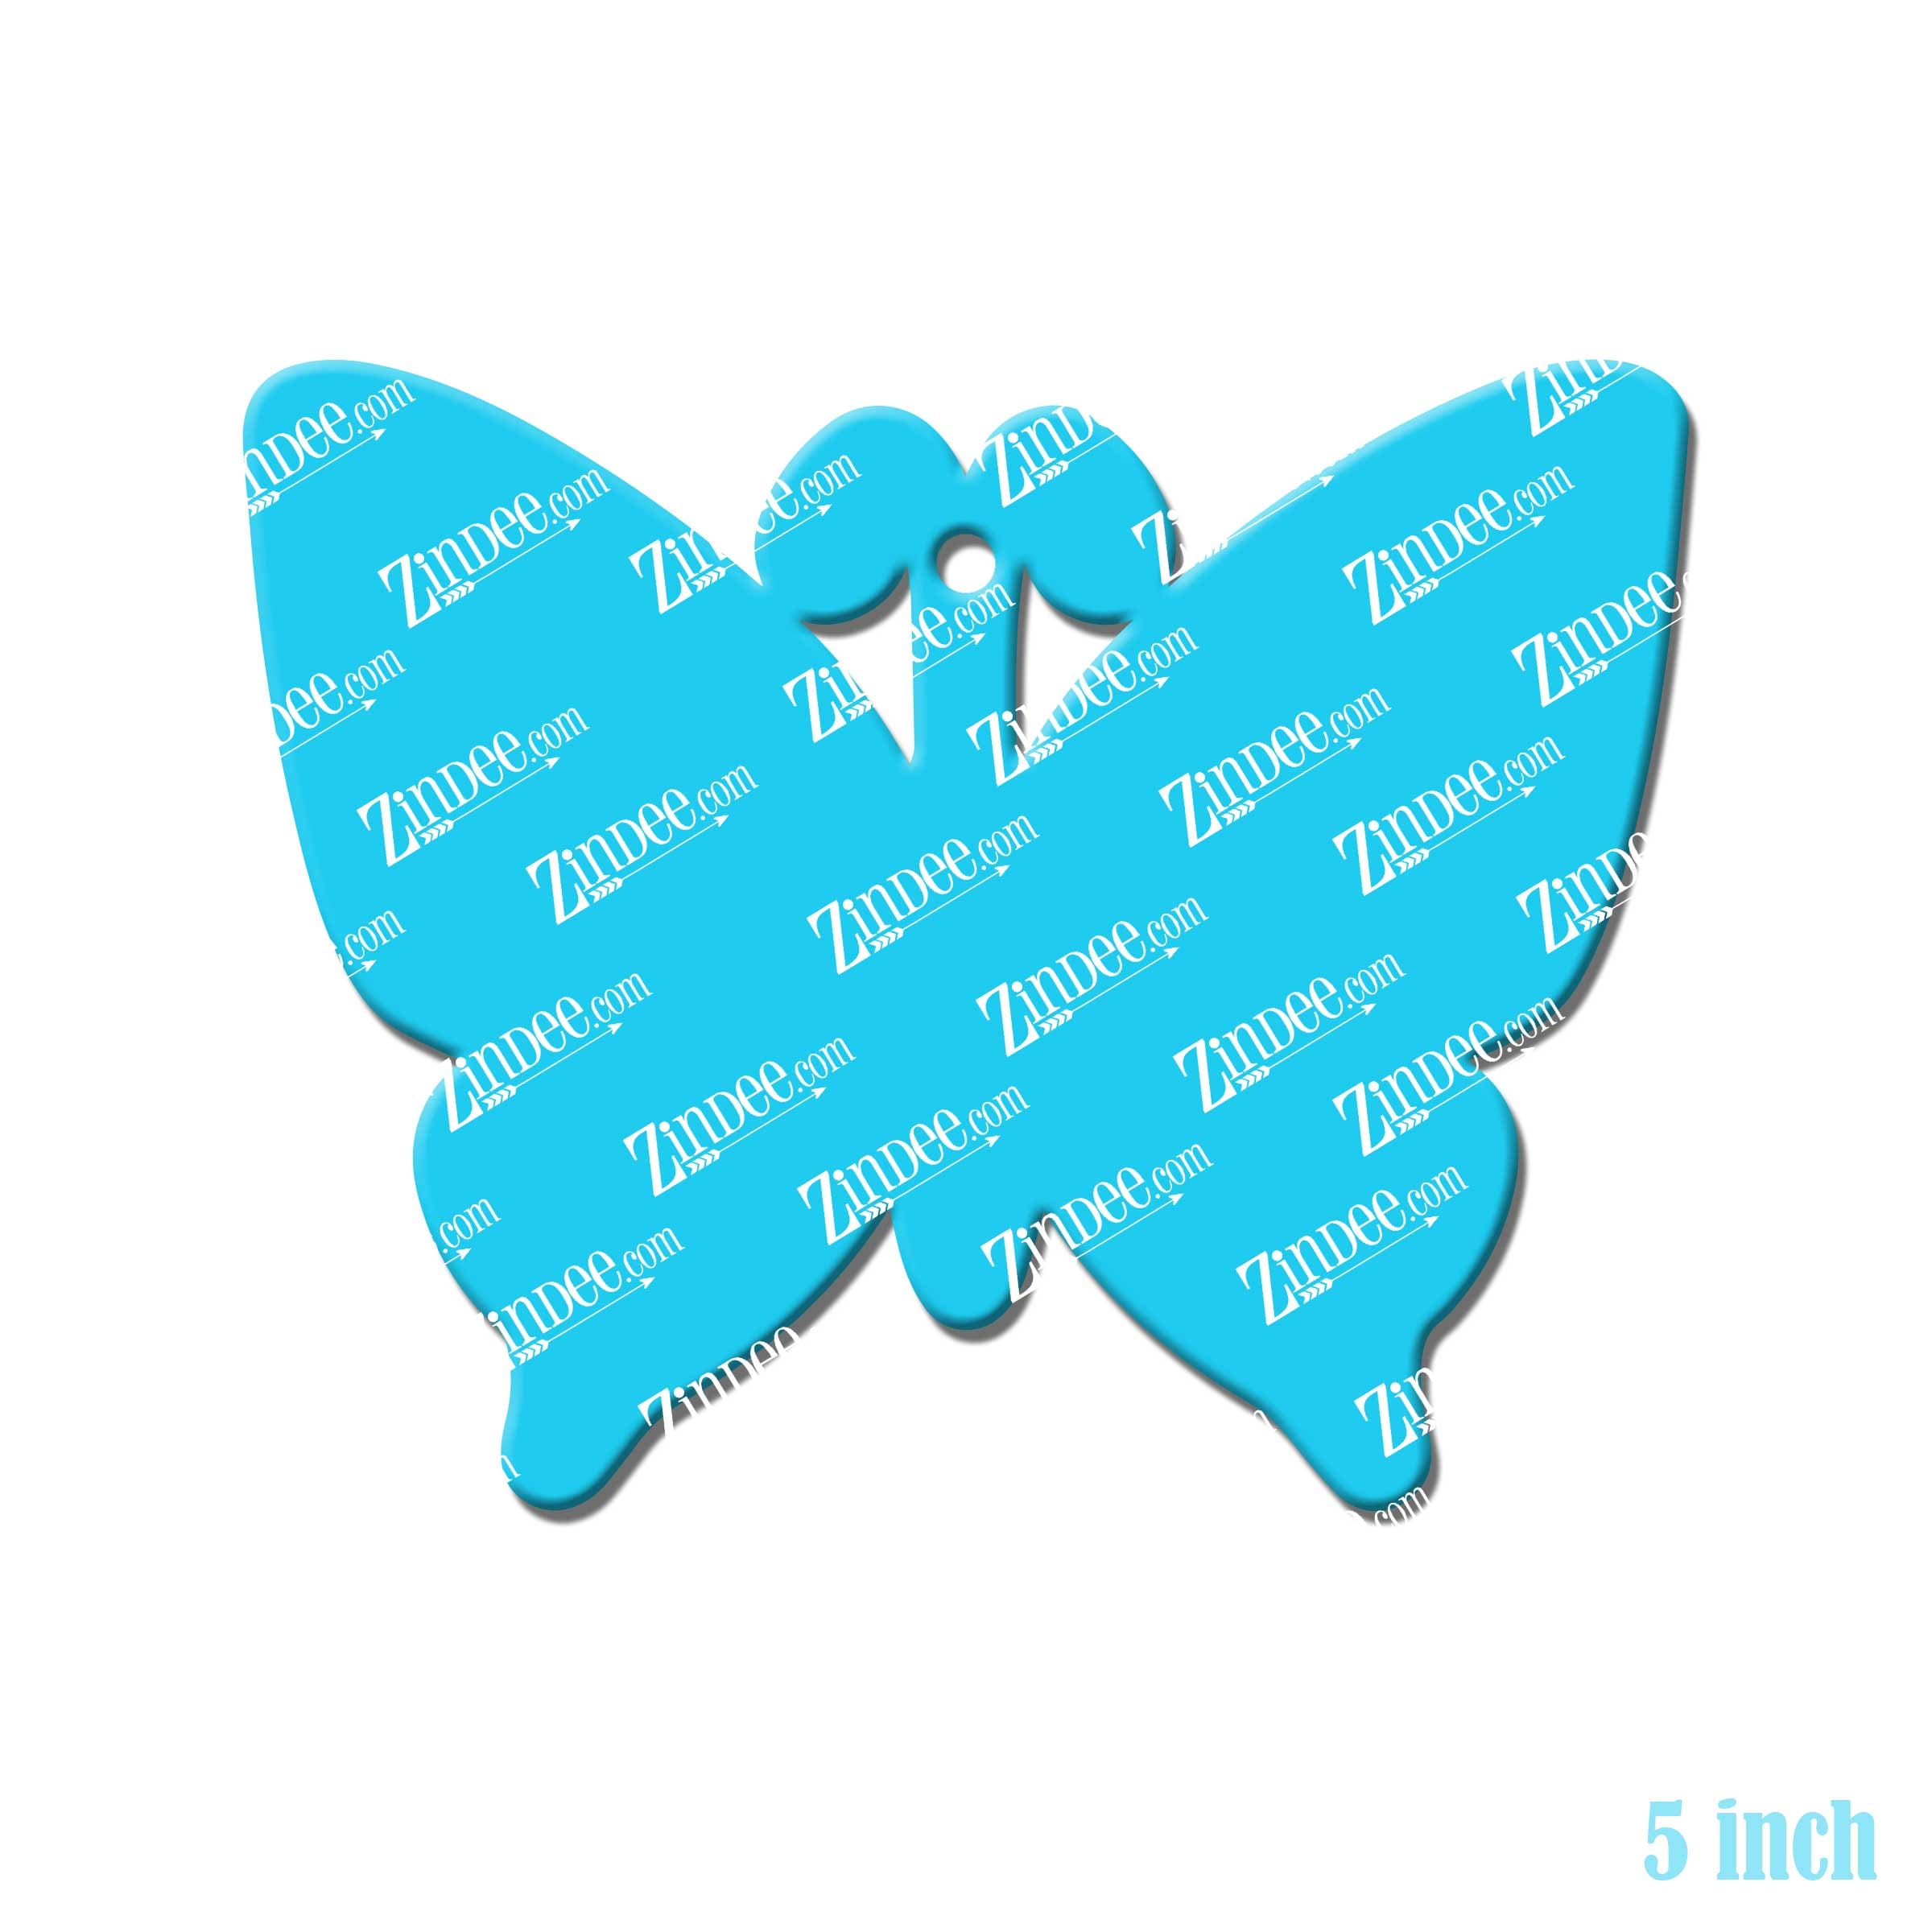 Butterfly acrylic blank (5 inch) –